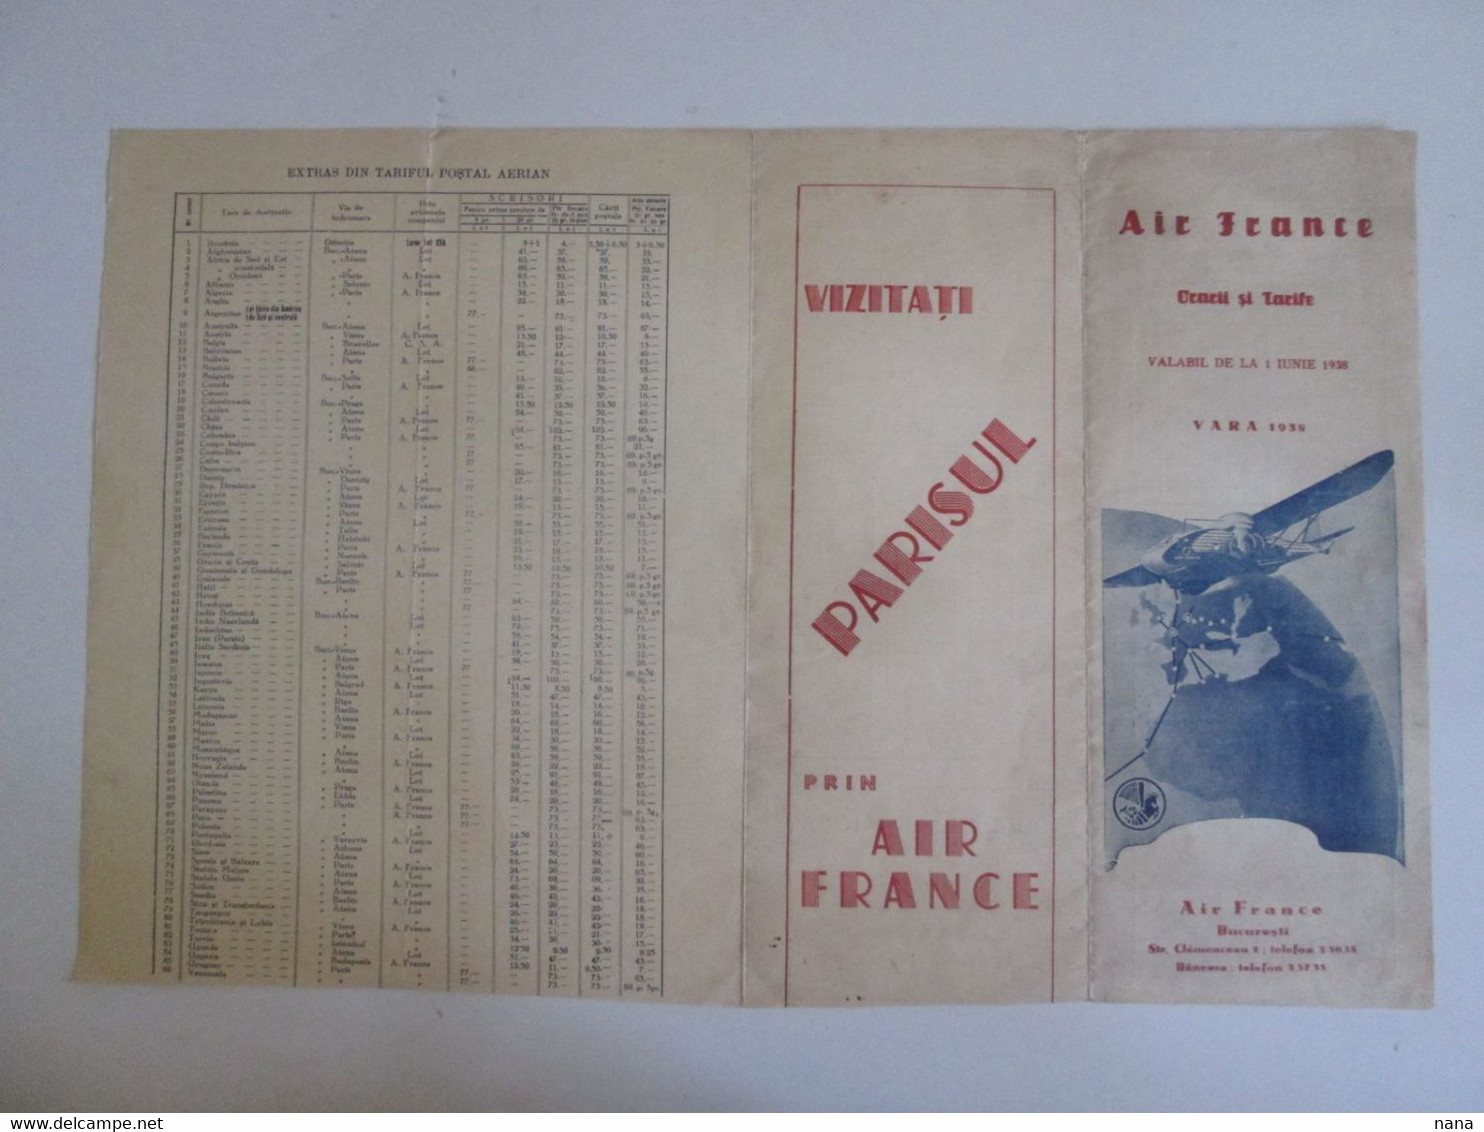 Rare! Air France Horaires Et Tarifs Des Vols Ete 1938 En Roumain/Air France Summer 1938 Timetable & Prices In Romanian - Horaires